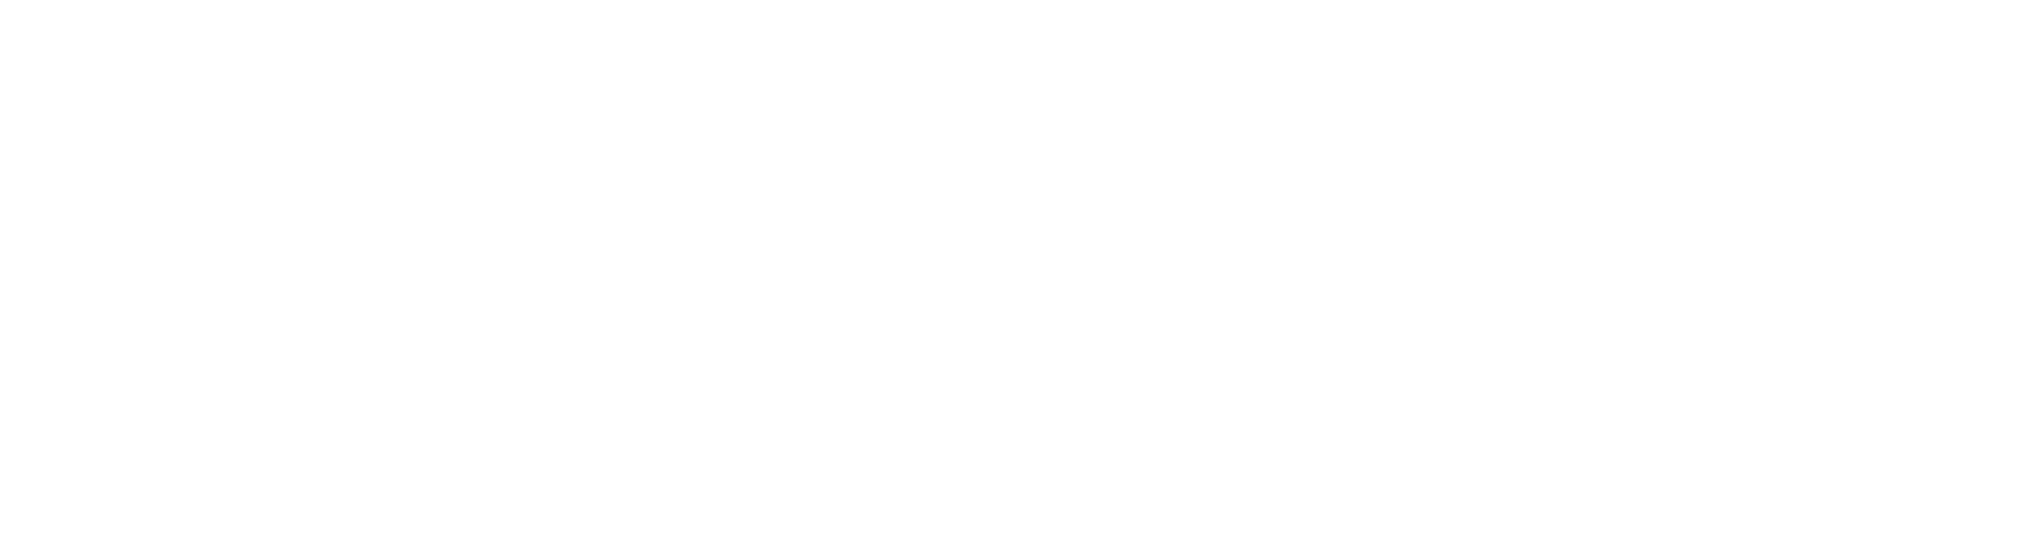 Events Bim - Barbados Events Calendar